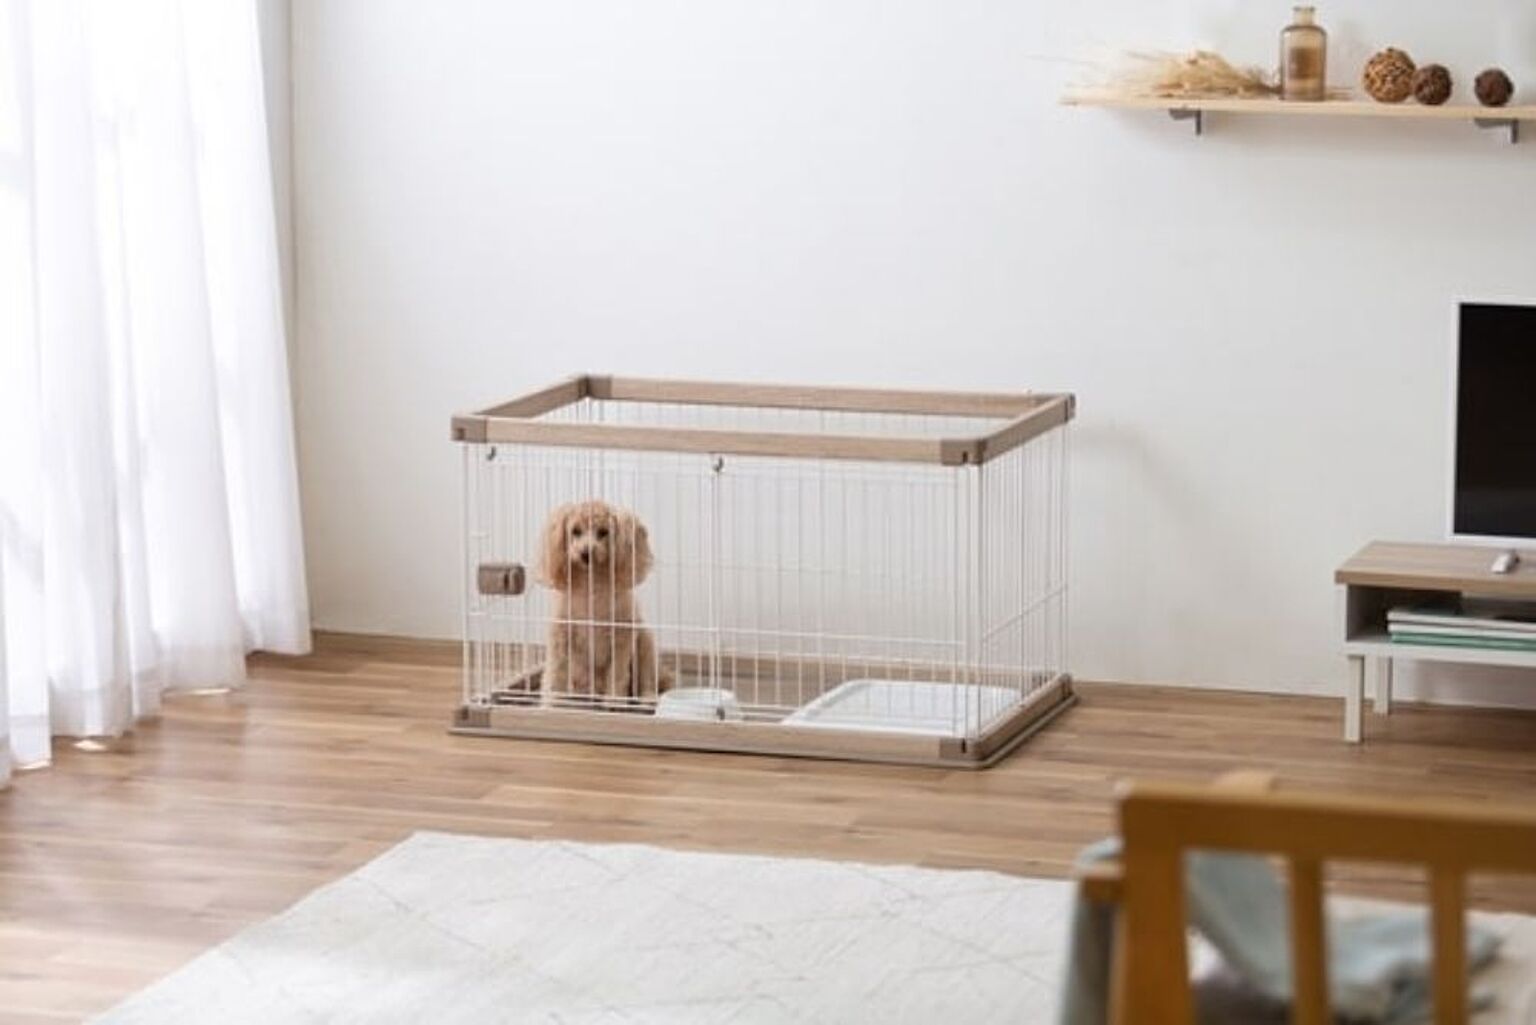 犬用インテリア・犬用家具